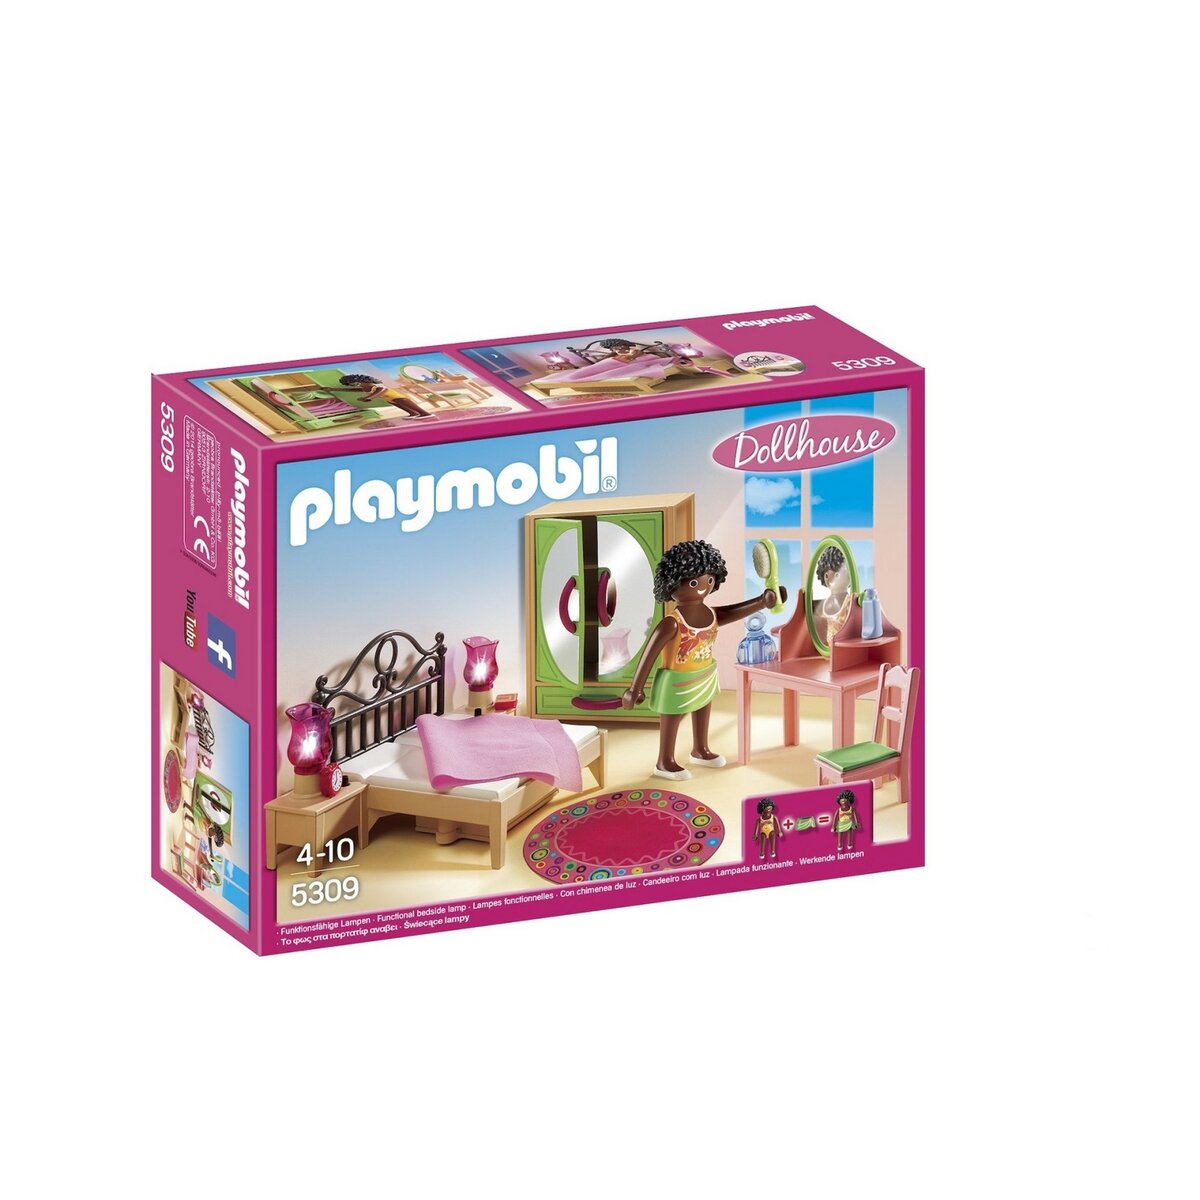 PLAYMOBIL 5309 - Dollhouse - Chambre d'adulte avec coiffeuse